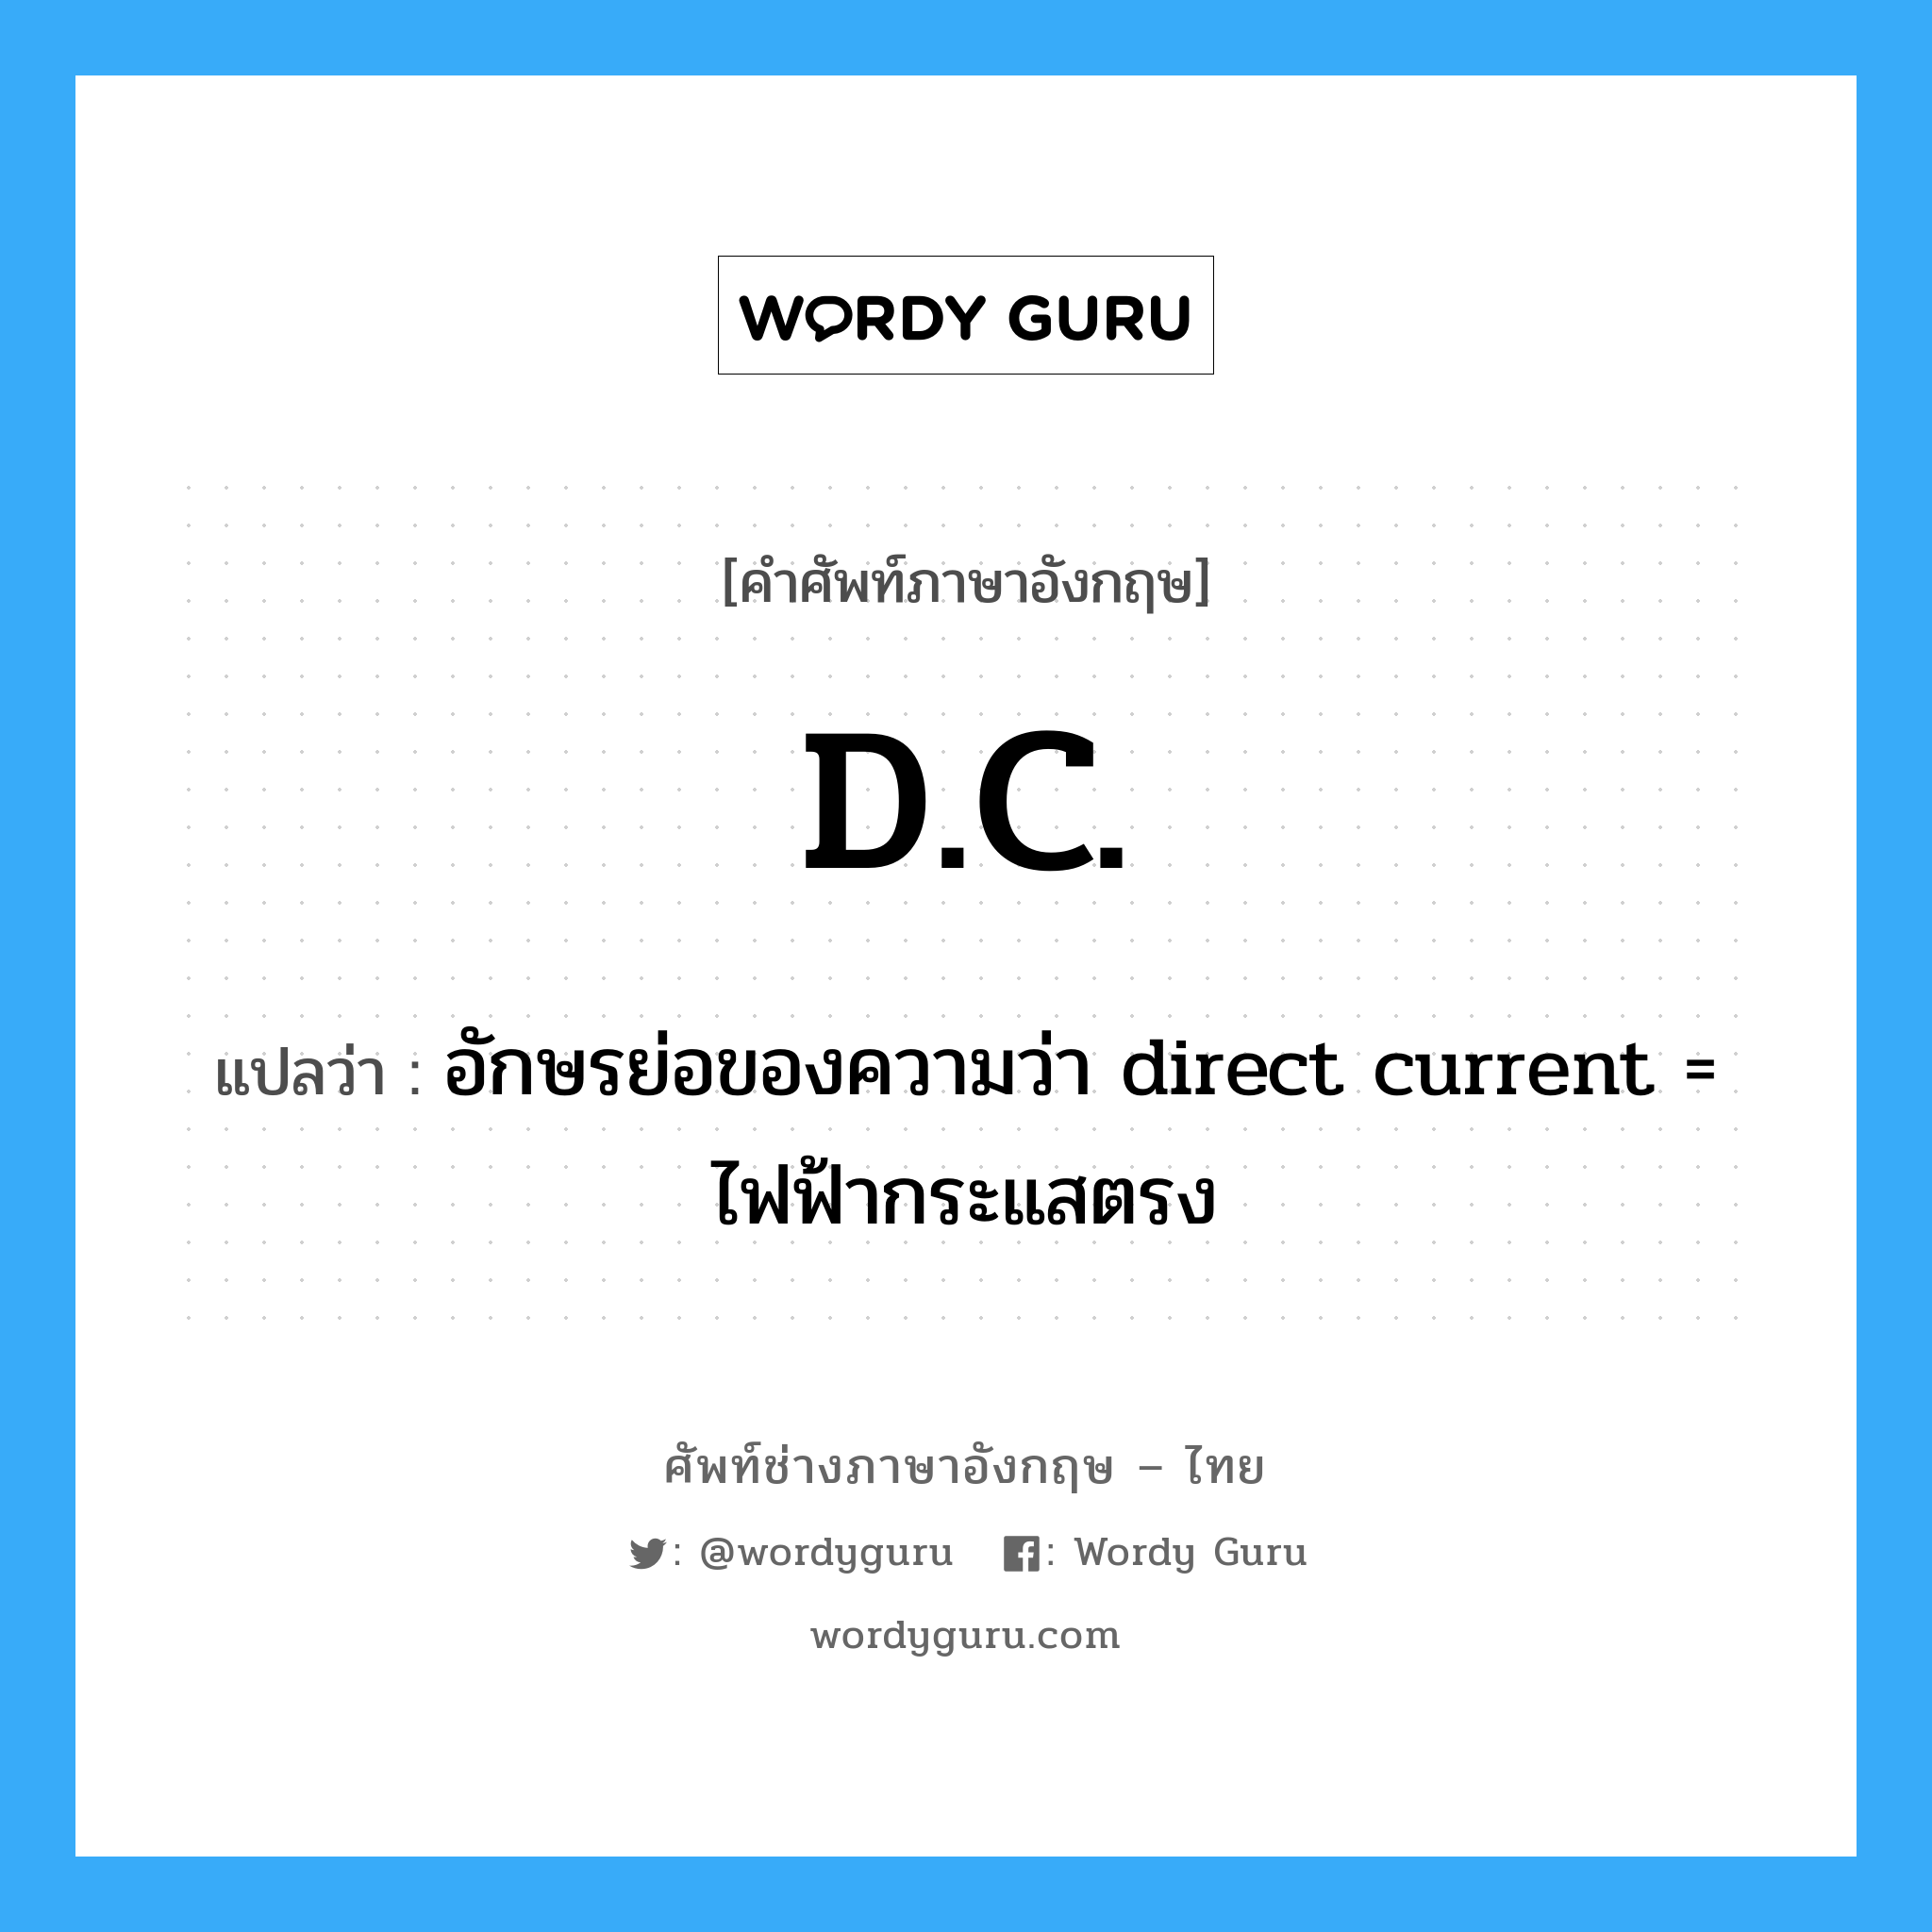 อักษรย่อของความว่า direct current = ไฟฟ้ากระแสตรง ภาษาอังกฤษ?, คำศัพท์ช่างภาษาอังกฤษ - ไทย อักษรย่อของความว่า direct current = ไฟฟ้ากระแสตรง คำศัพท์ภาษาอังกฤษ อักษรย่อของความว่า direct current = ไฟฟ้ากระแสตรง แปลว่า D.C.